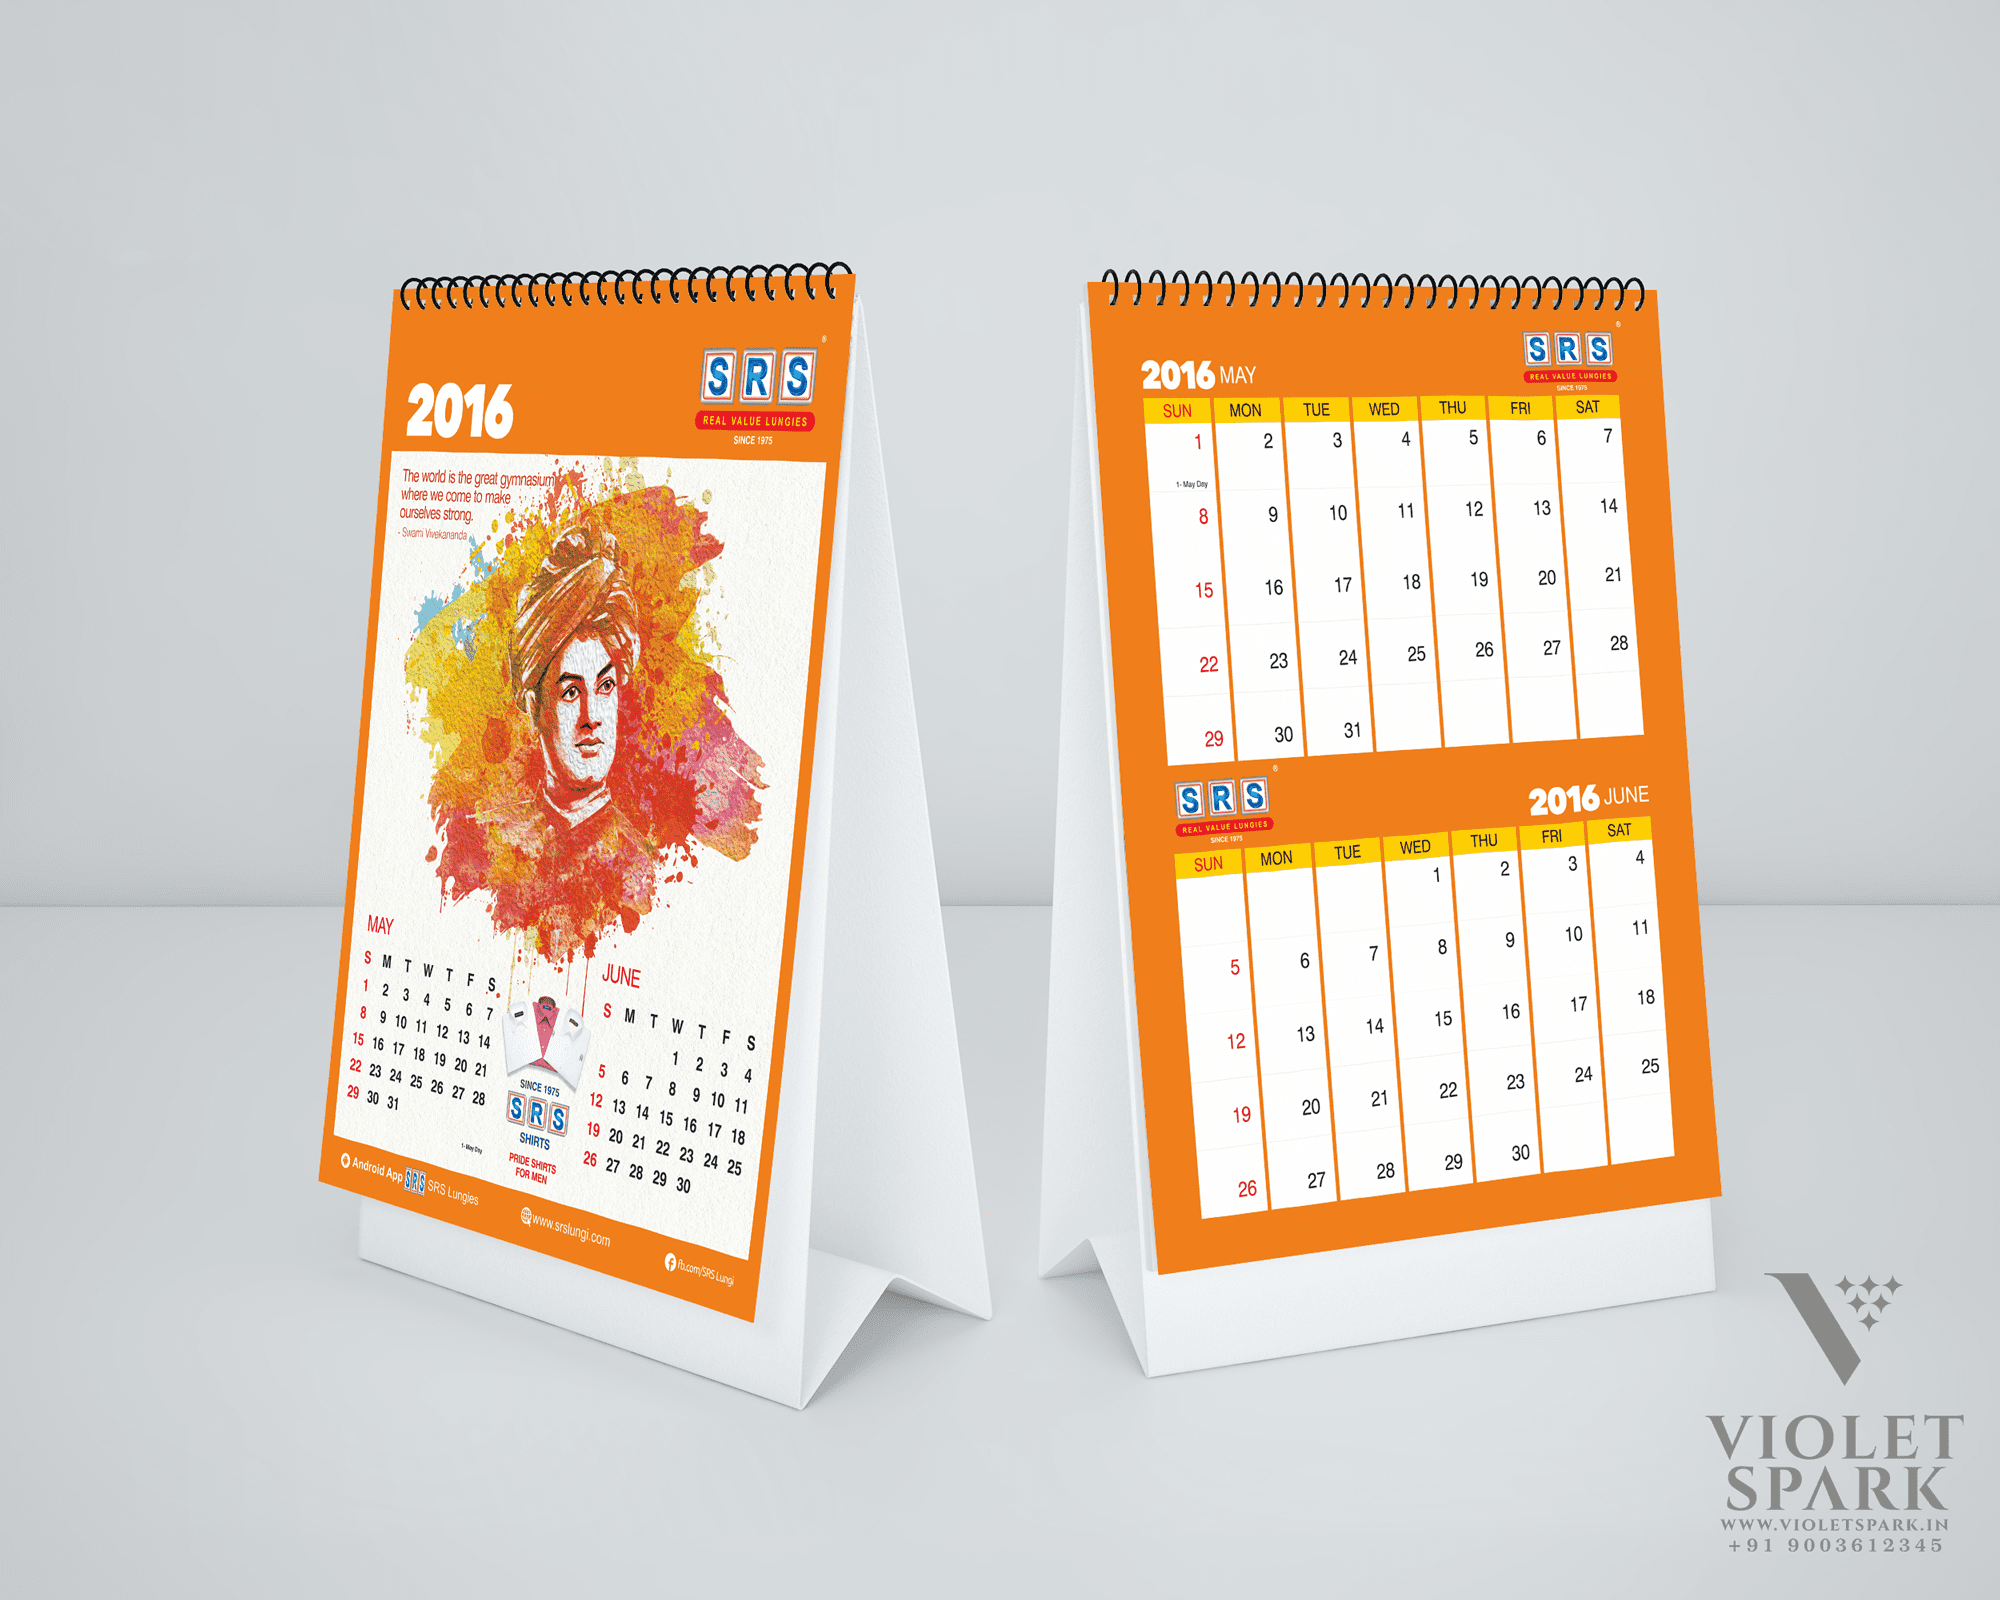 SRS Cotton Mills Calendar Design Branding Packaging Design Digital Marketing in Tiruppur by Violet Spark